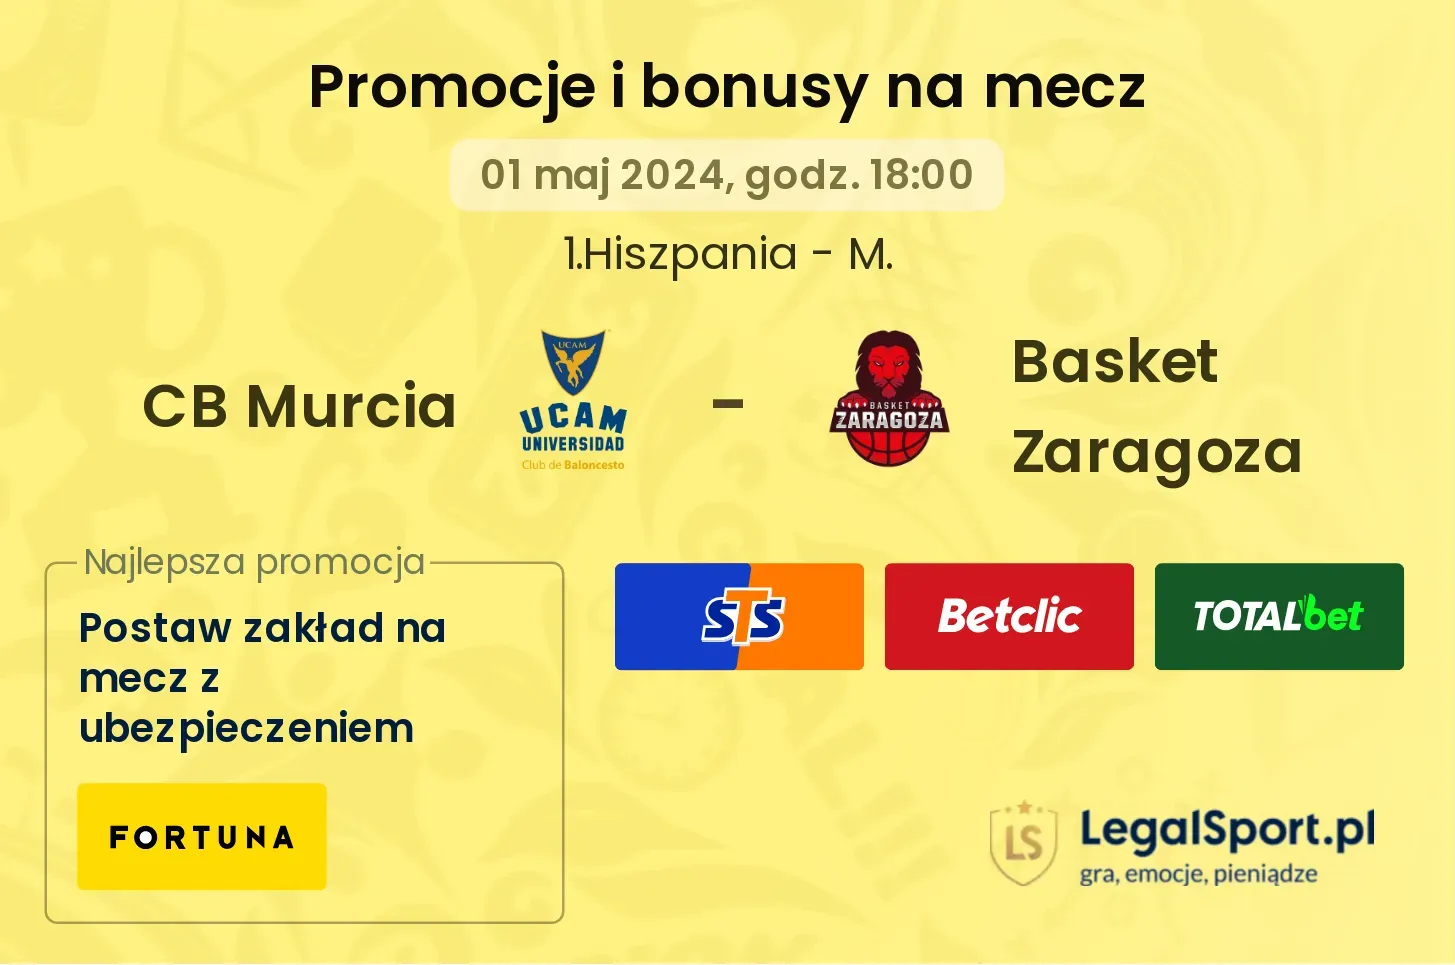 CB Murcia - Basket Zaragoza promocje bonusy na mecz